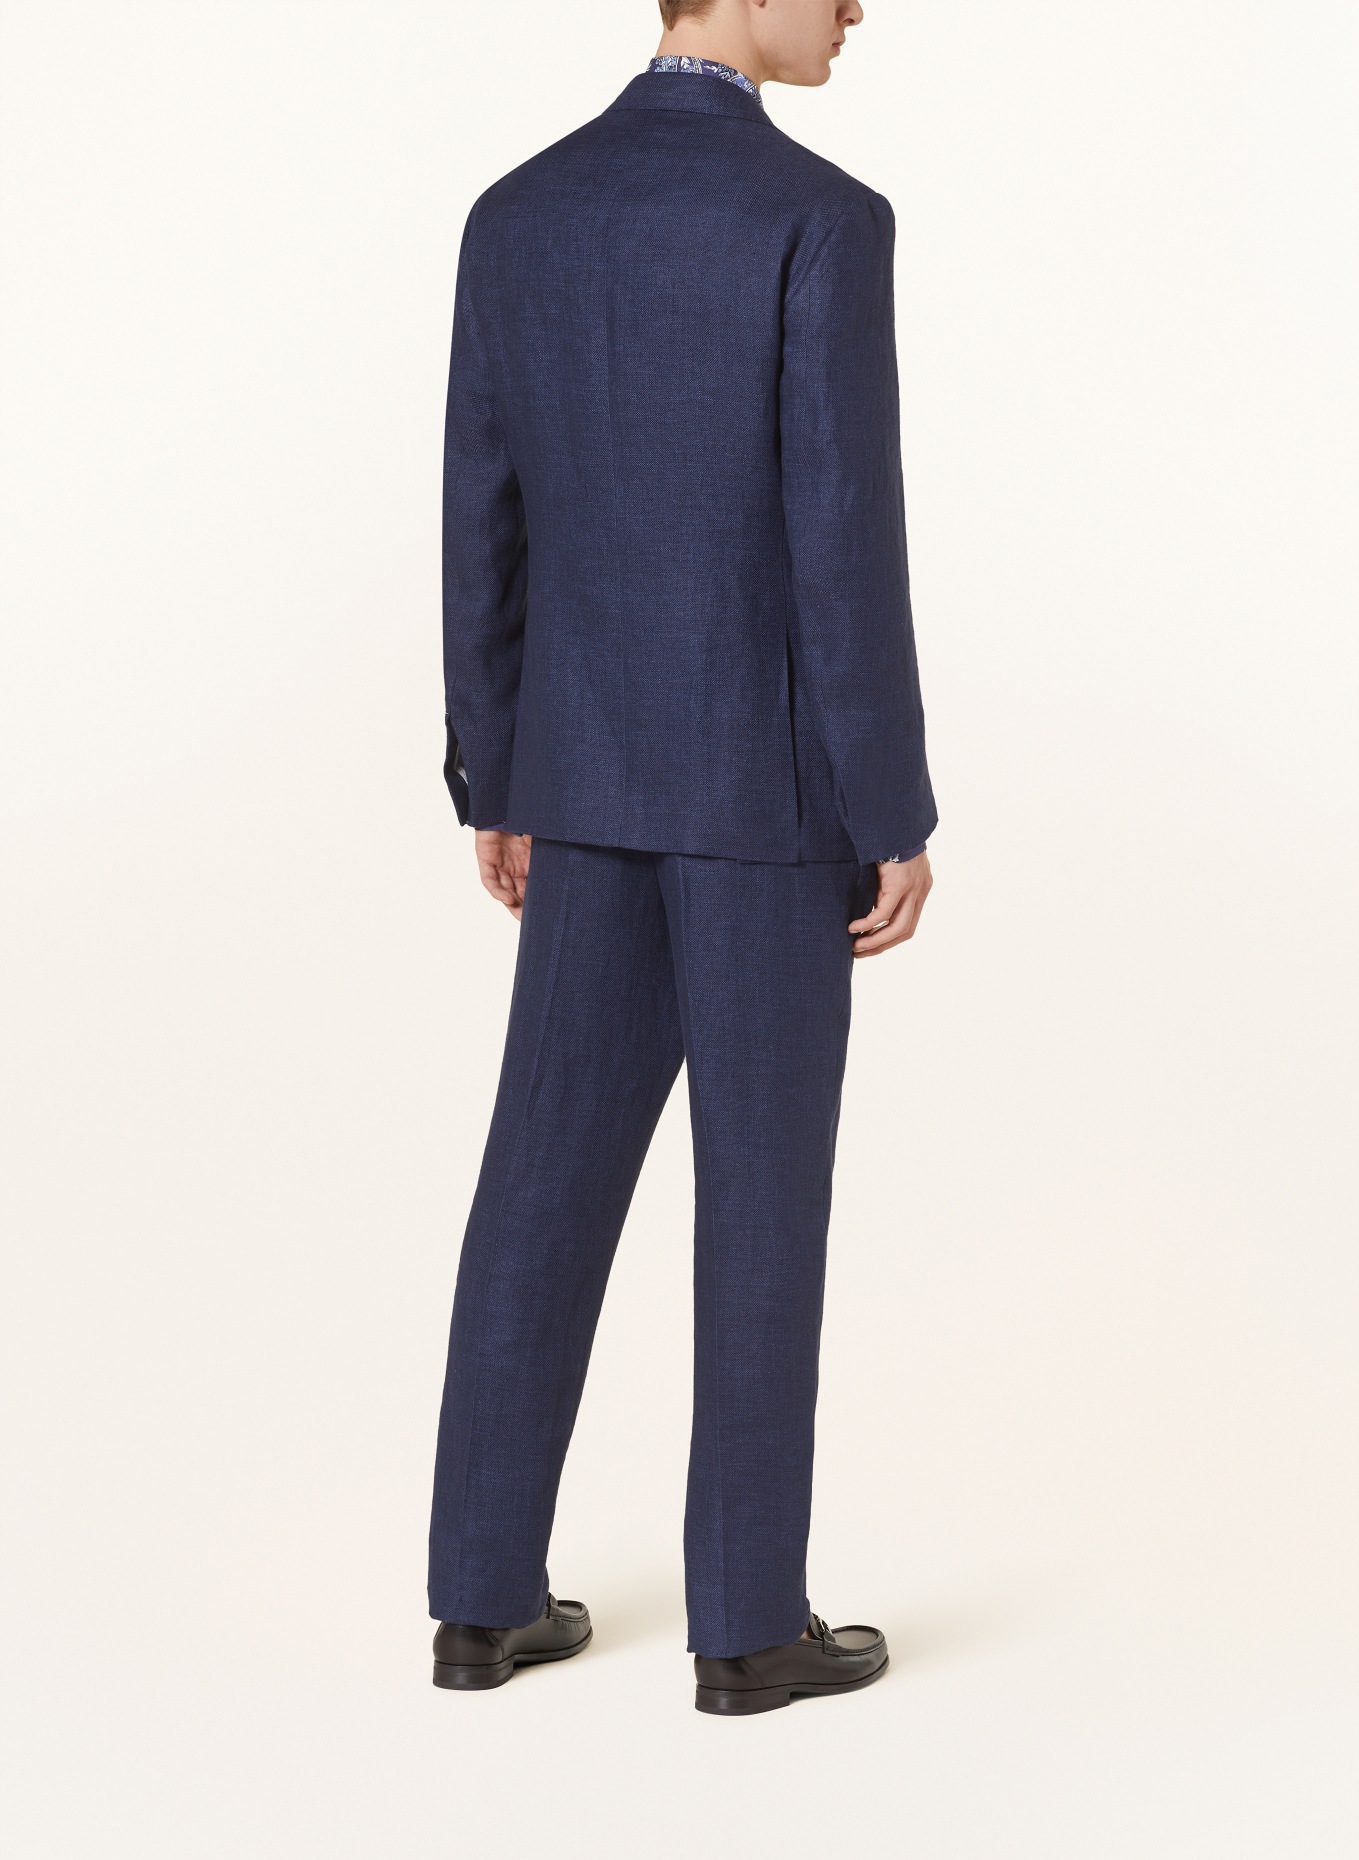 RALPH LAUREN PURPLE LABEL Suit jacket extra slim fit in linen, Color: DARK BLUE (Image 3)